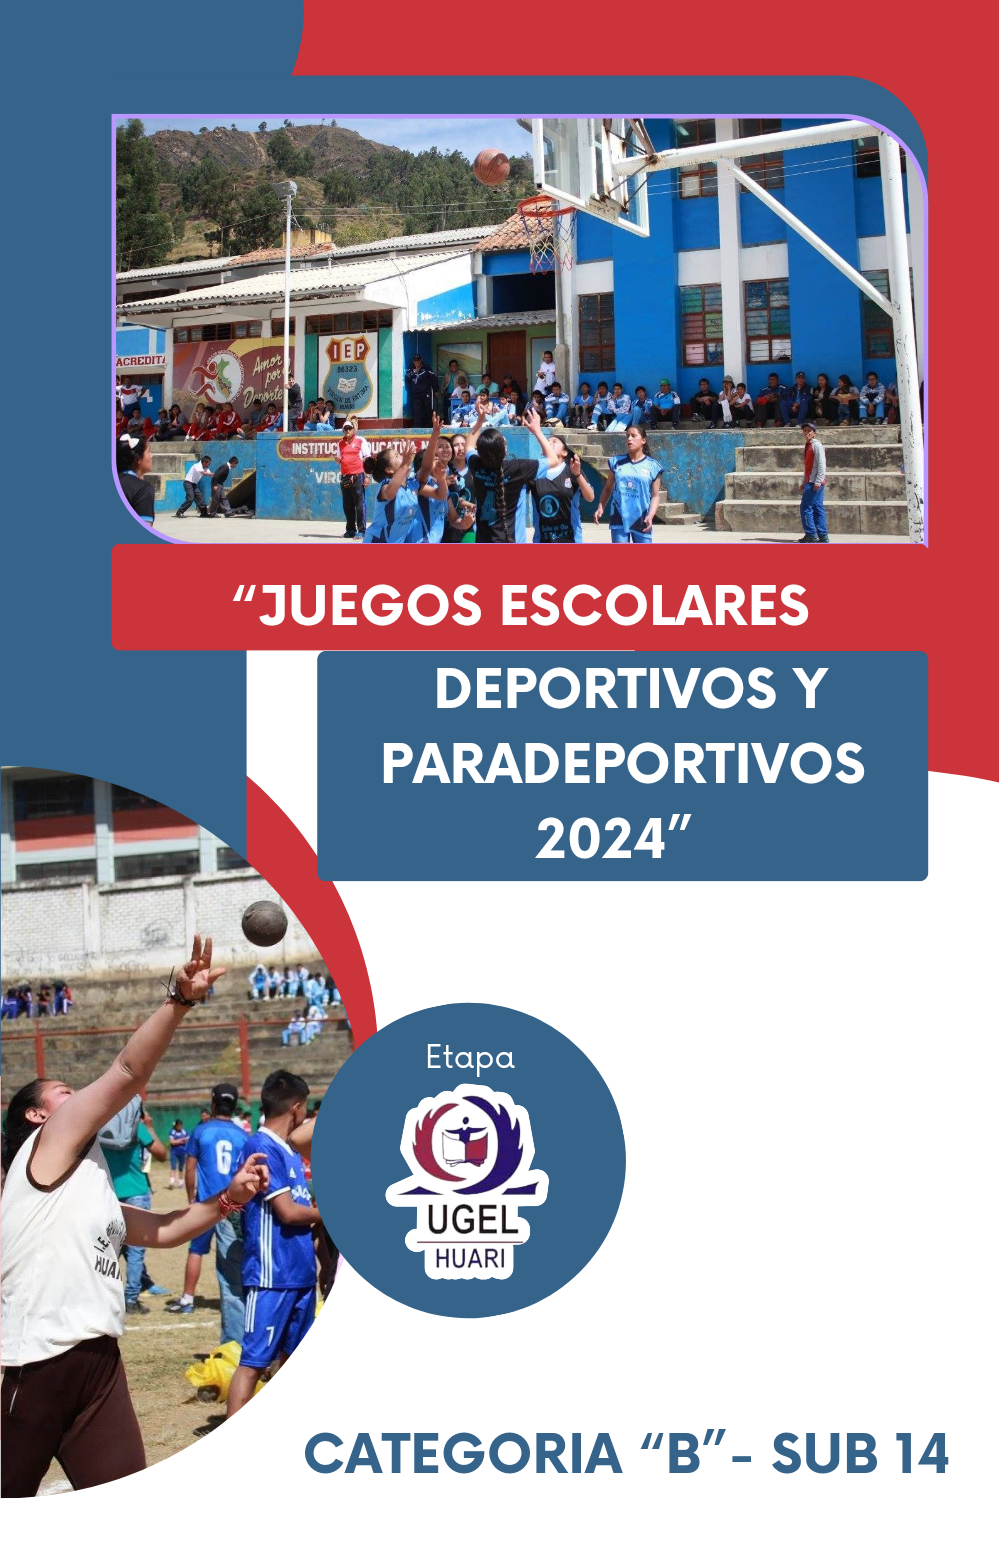 Programa Juegos Escolares Deportivos y Paradeportivos 2024 Categoría «B» -Sub 14 Etapa UGEL Huari.